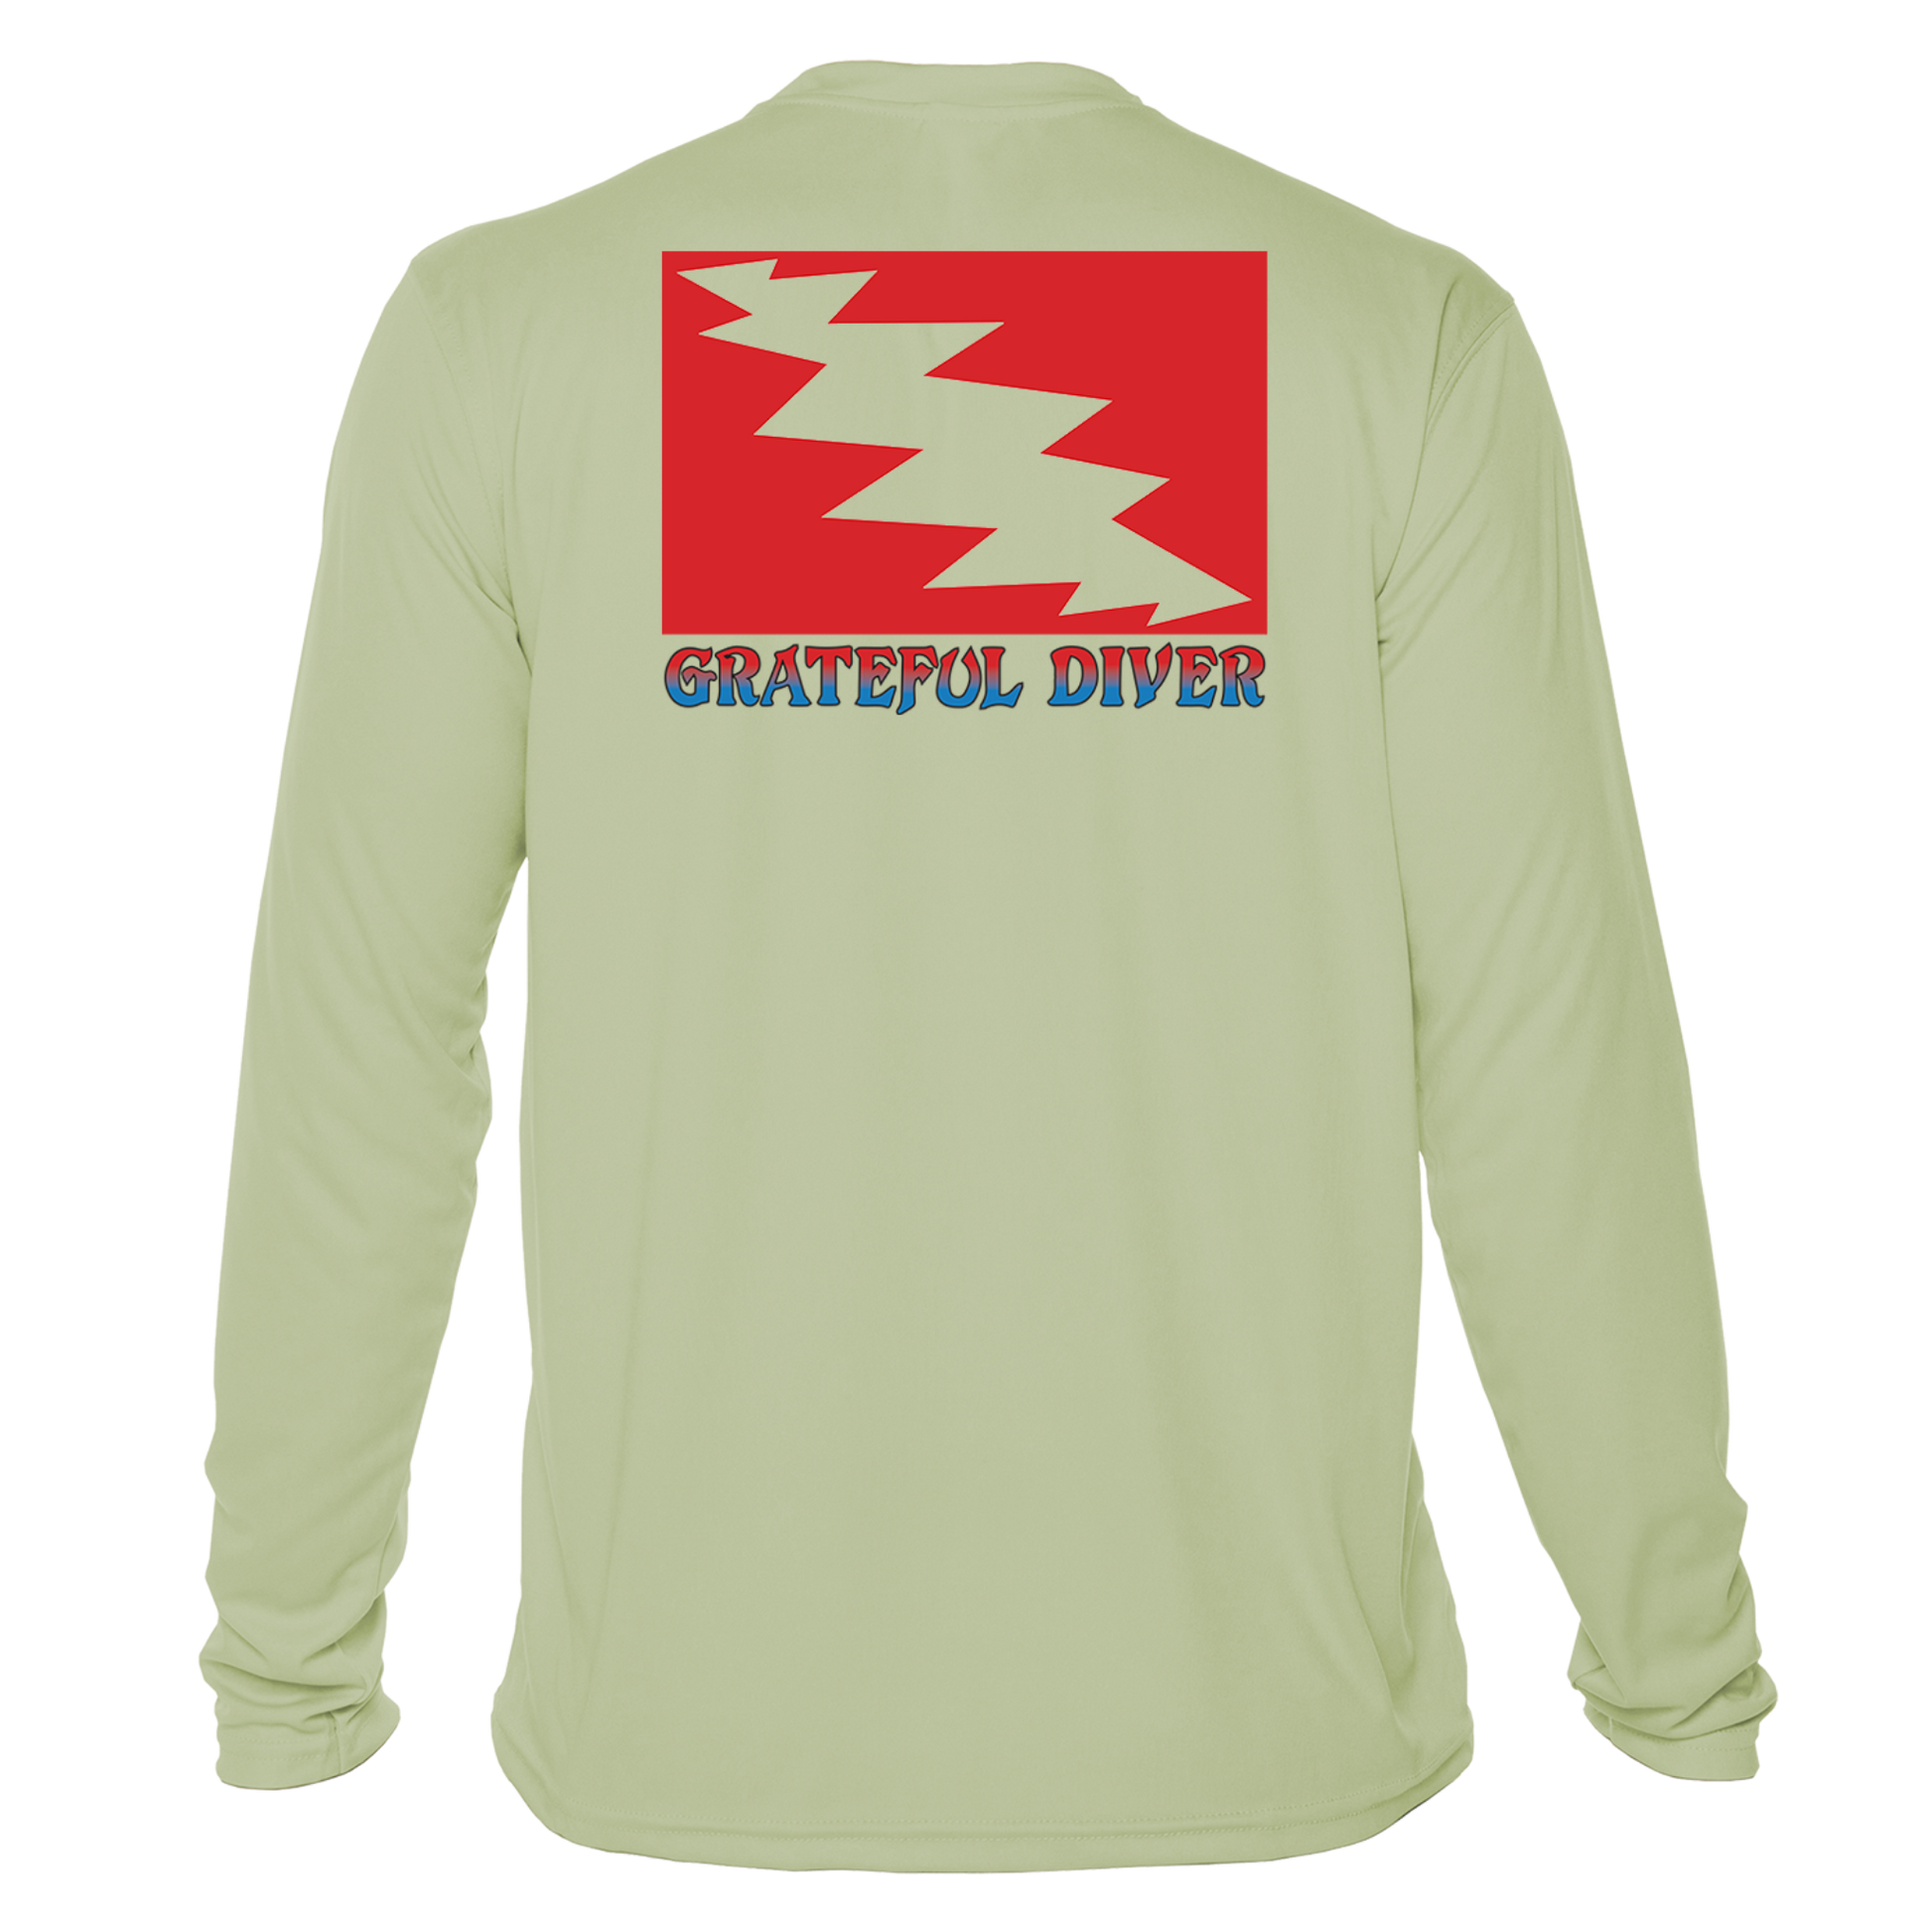 Grateful Diver Classic UV Shirt in sage back shot off figure